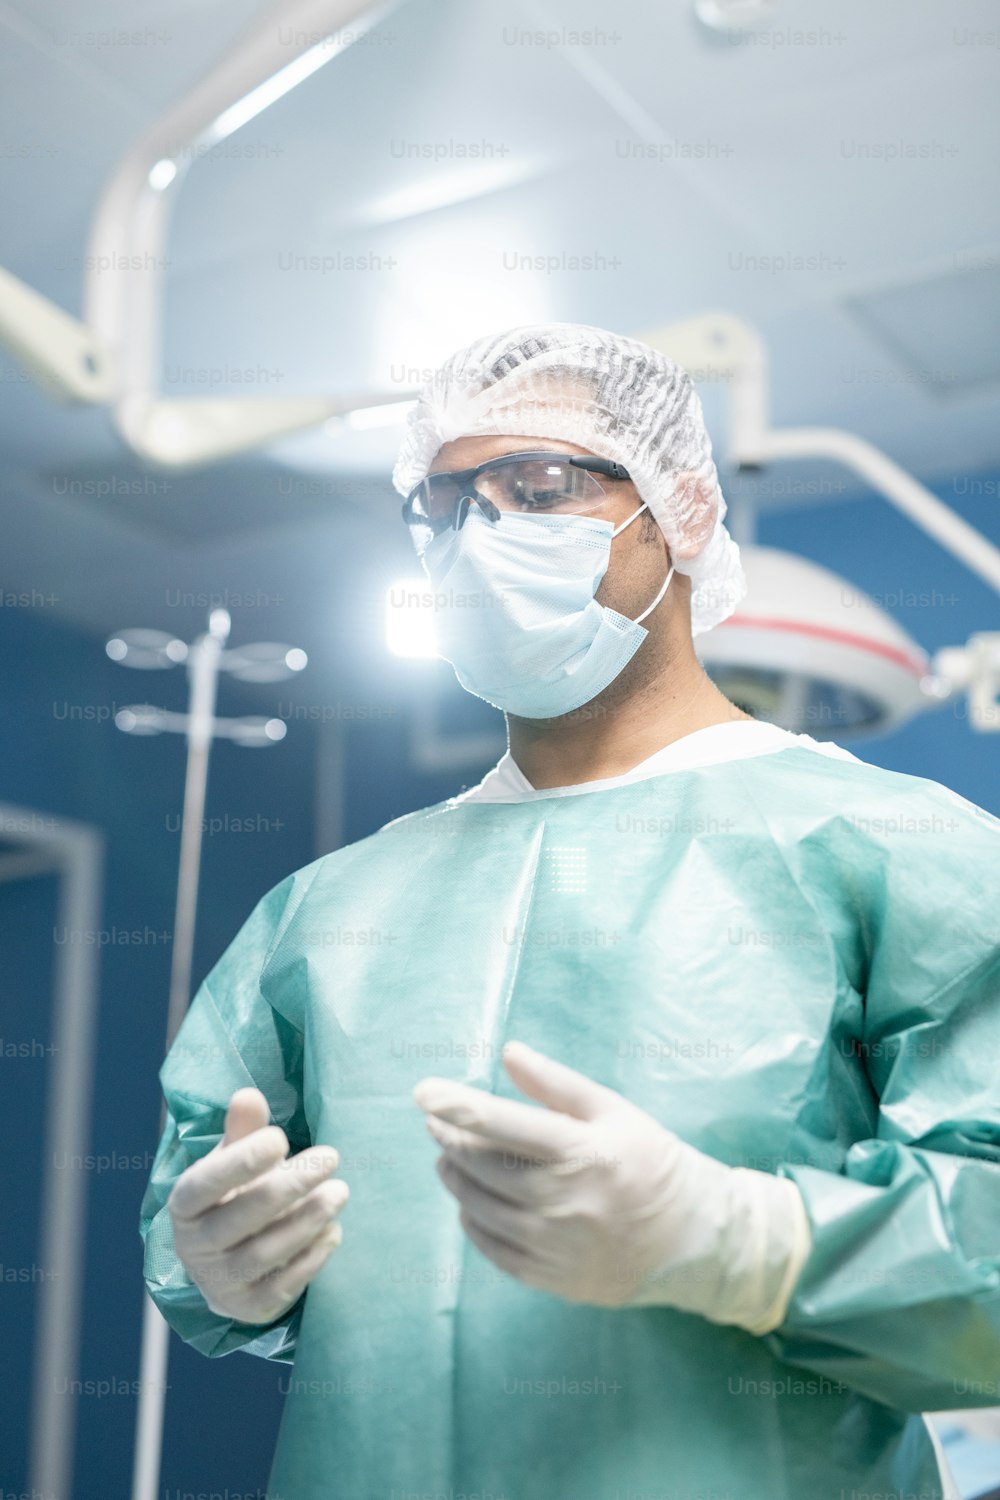 保護作業服、マスク、手袋、眼鏡をかけたプロの男性外科医が手術室に立ち、患者を手術する